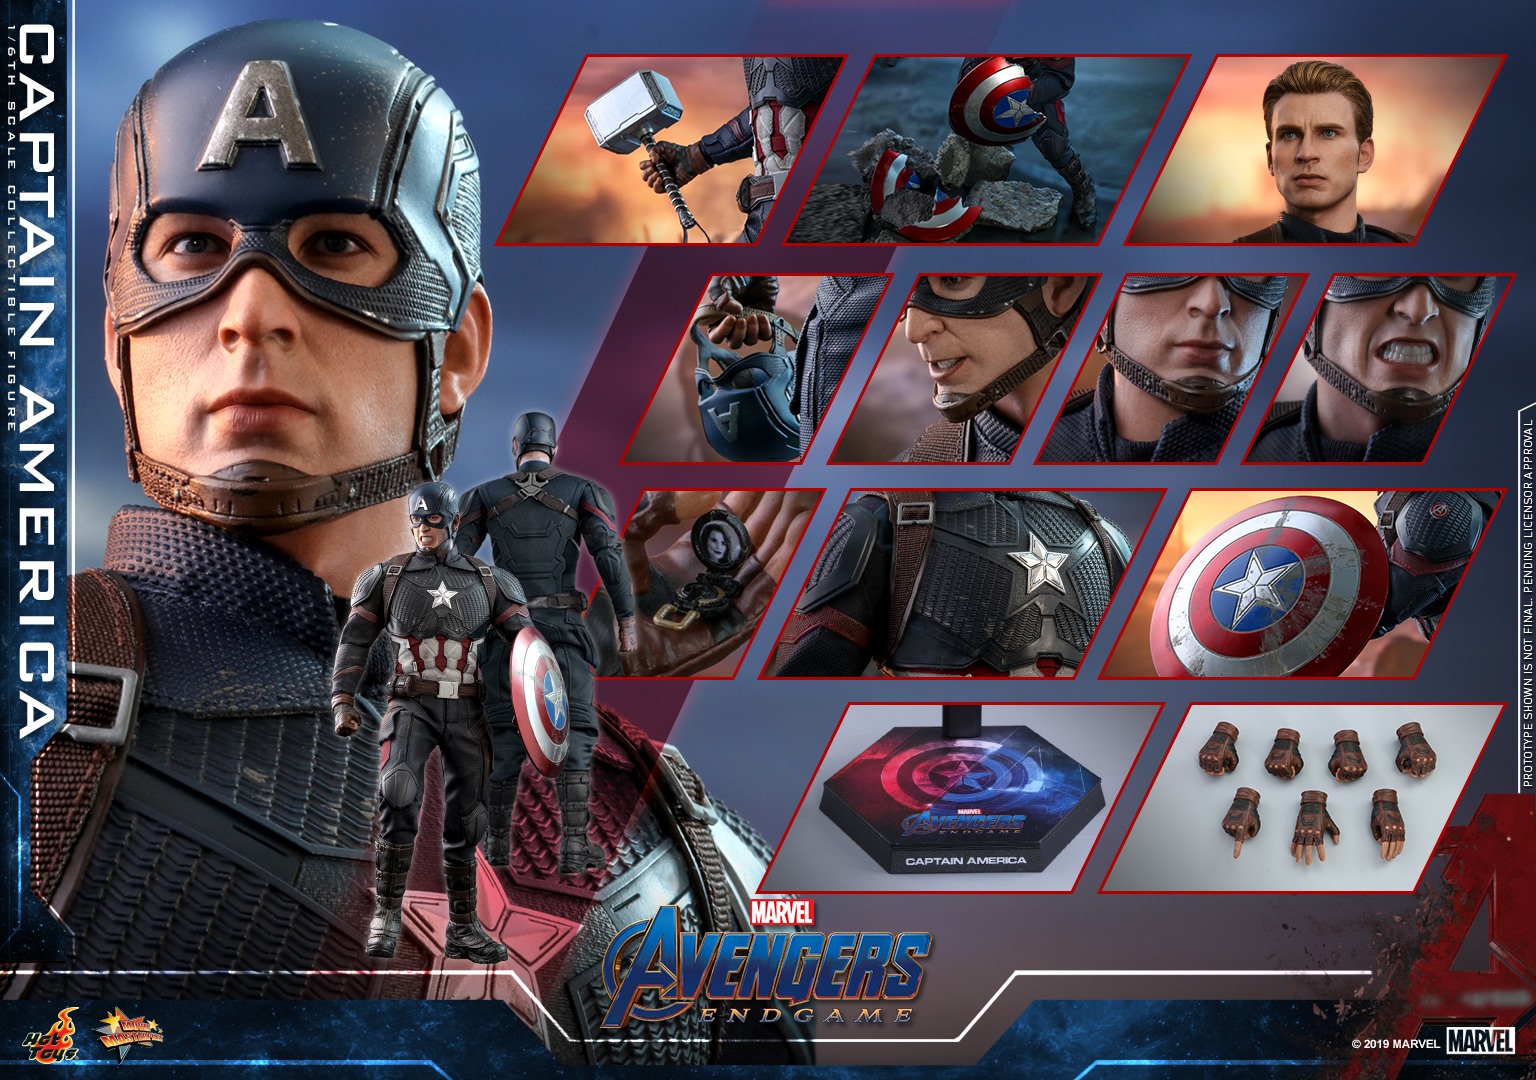 Hot-Toys-Avengers-Endgame-Captain-America-012.jpg